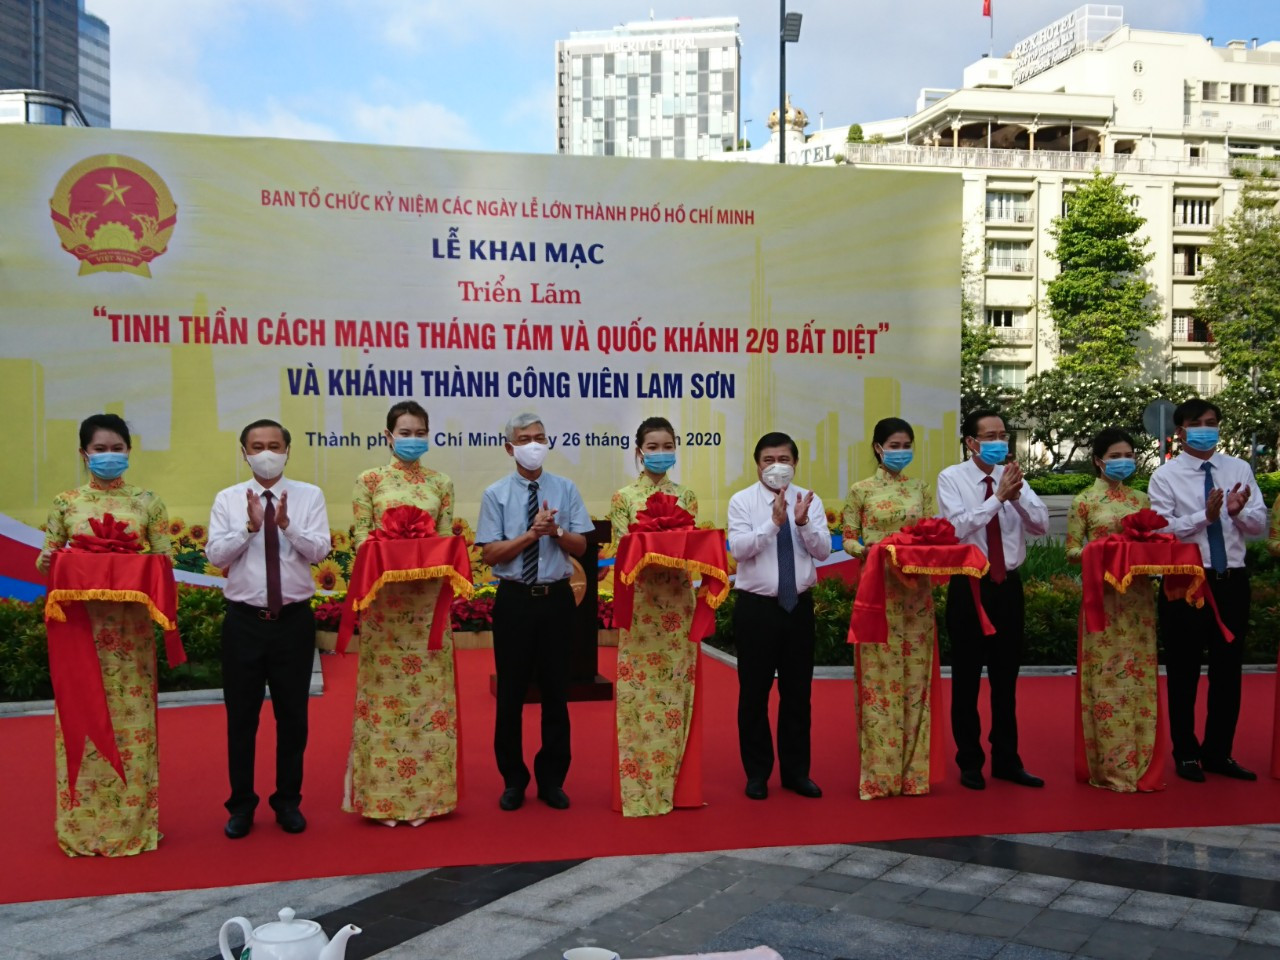  Chủ tịch UBND TP HCM Nguyễn Thành Phong cùng các lãnh đạo thành phố cắt băng khai mạc triển lãm và khánh thành công viên Lam Sơn.